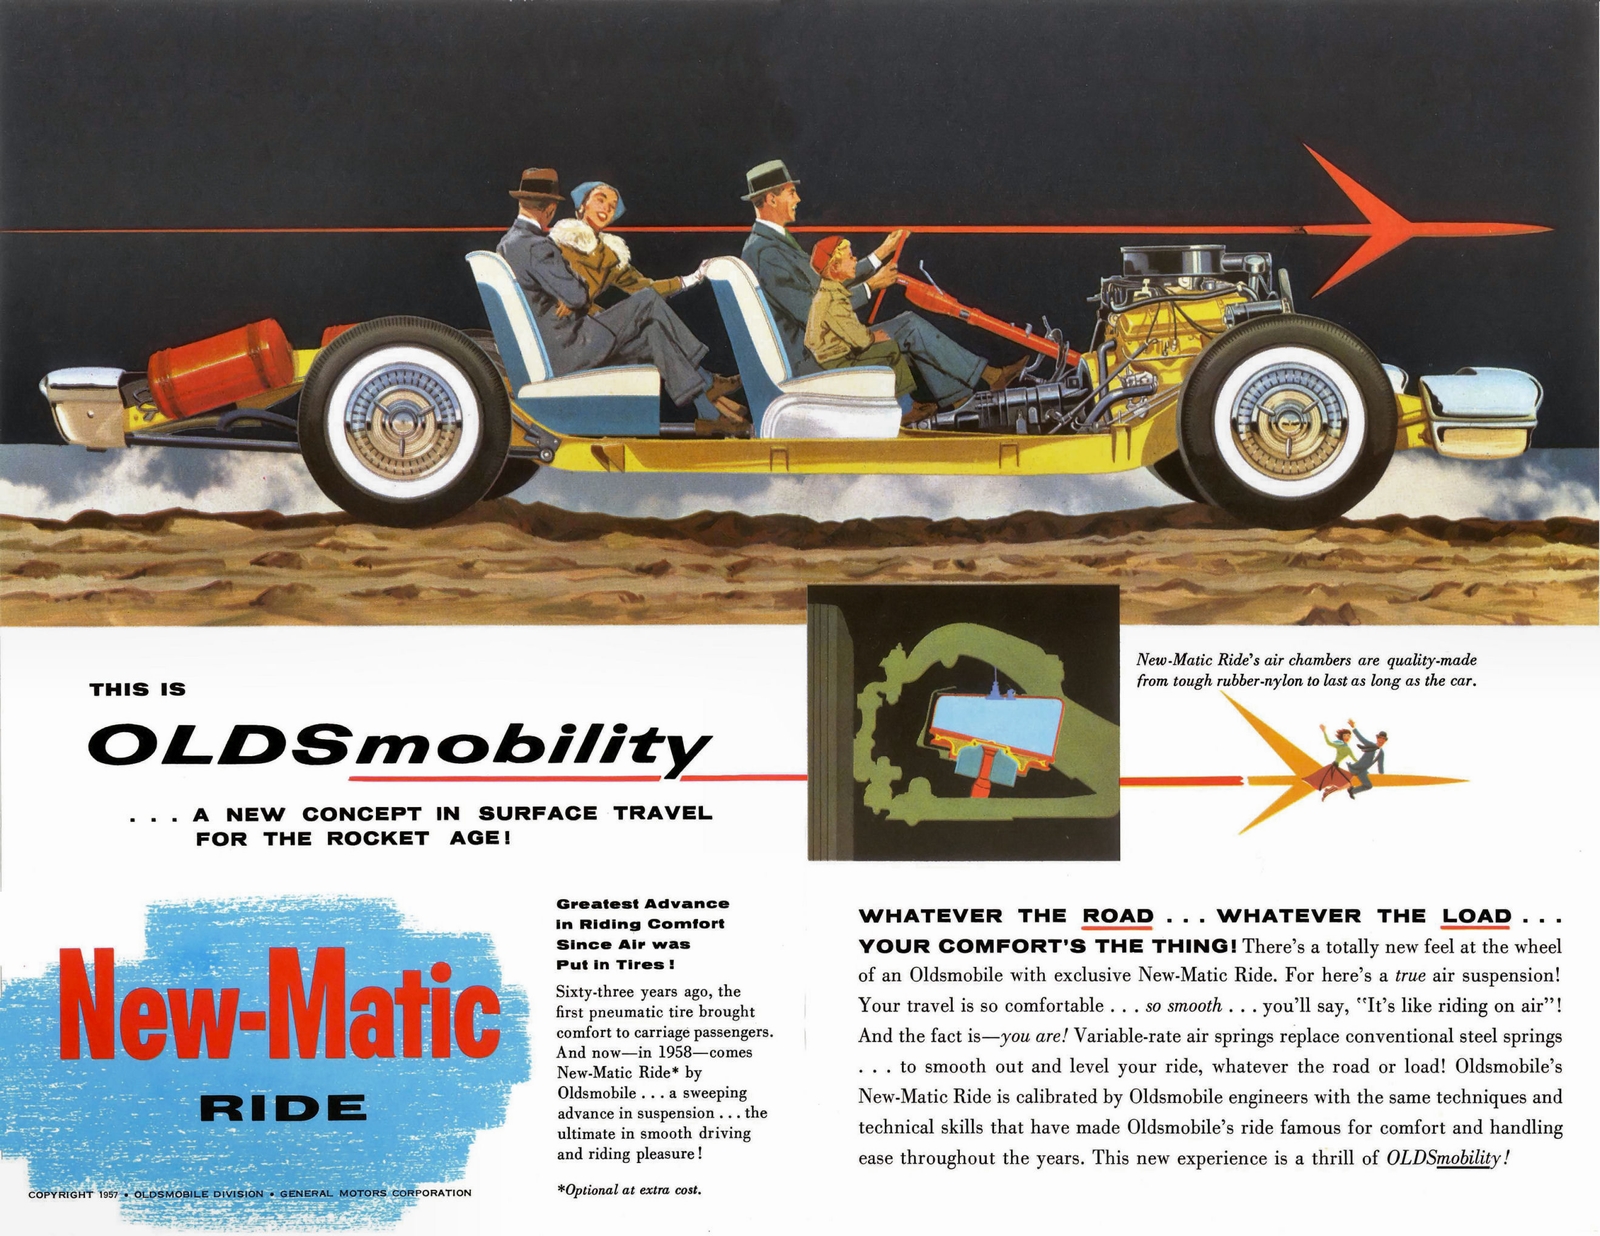 n_1958 Oldsmobile New-Matic Ride-02-03.jpg